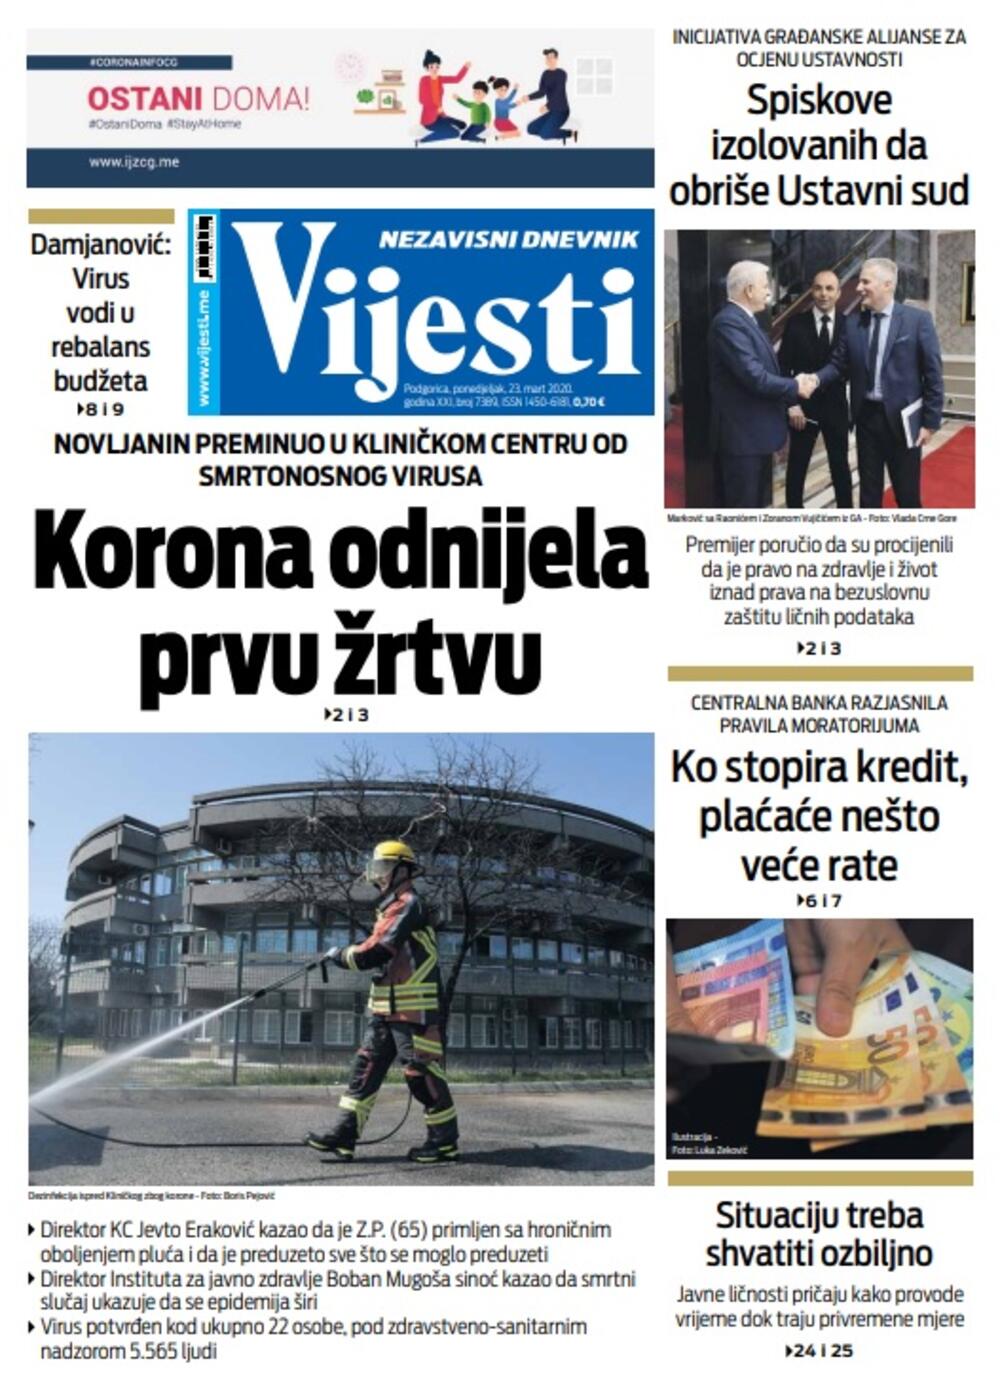 Naslovna strana "Vijesti" za 23. mart 2020. godine, Foto: Vijesti